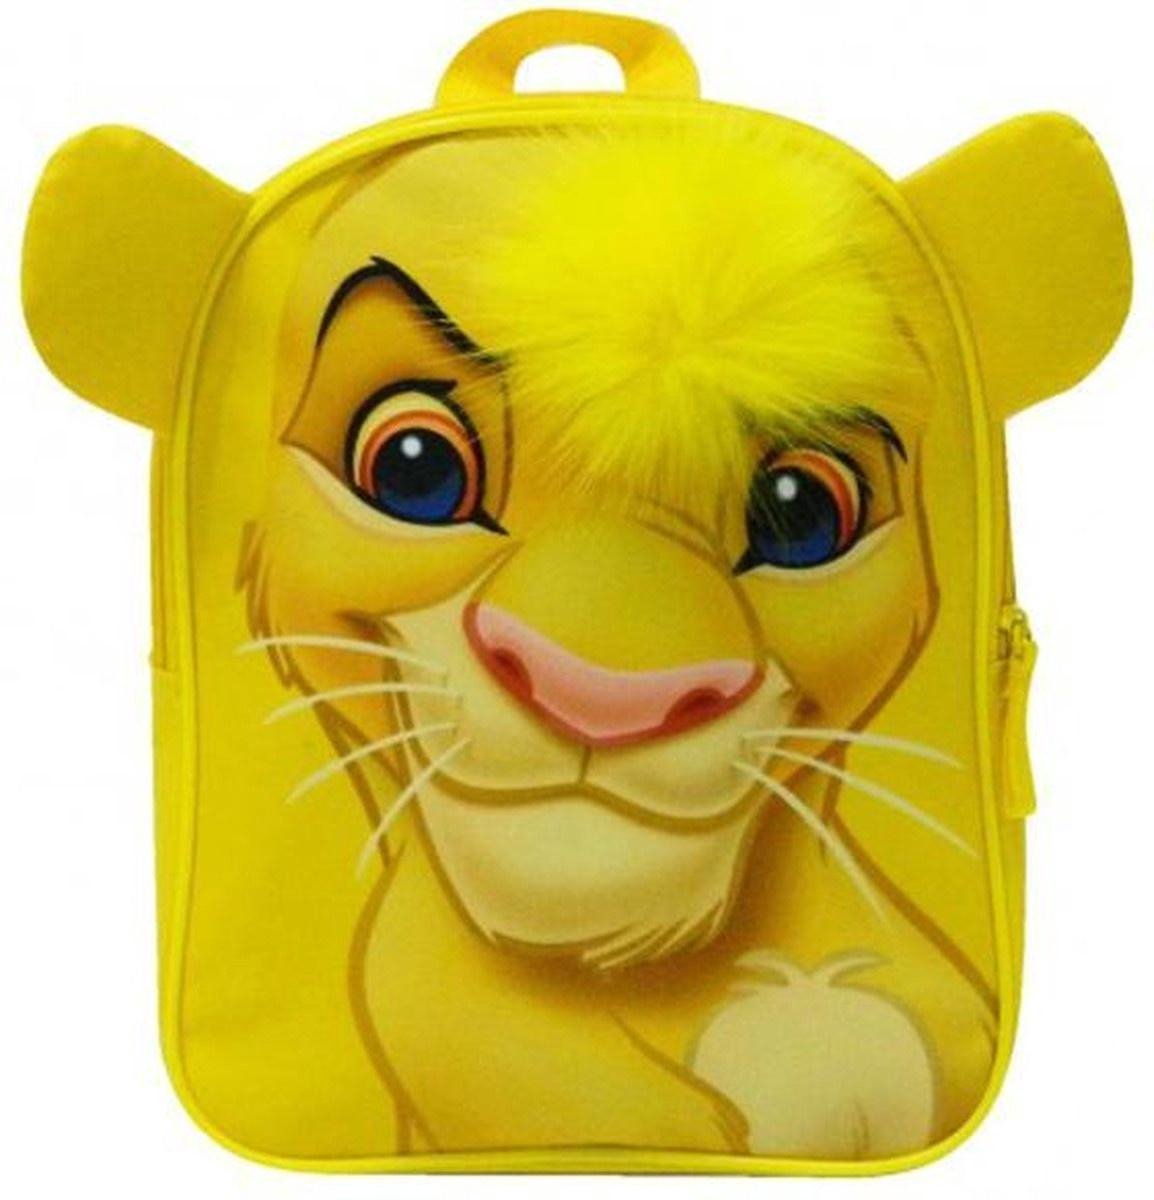 Disney rugzak Lion King Simba junior 10 liter polyester - Geel